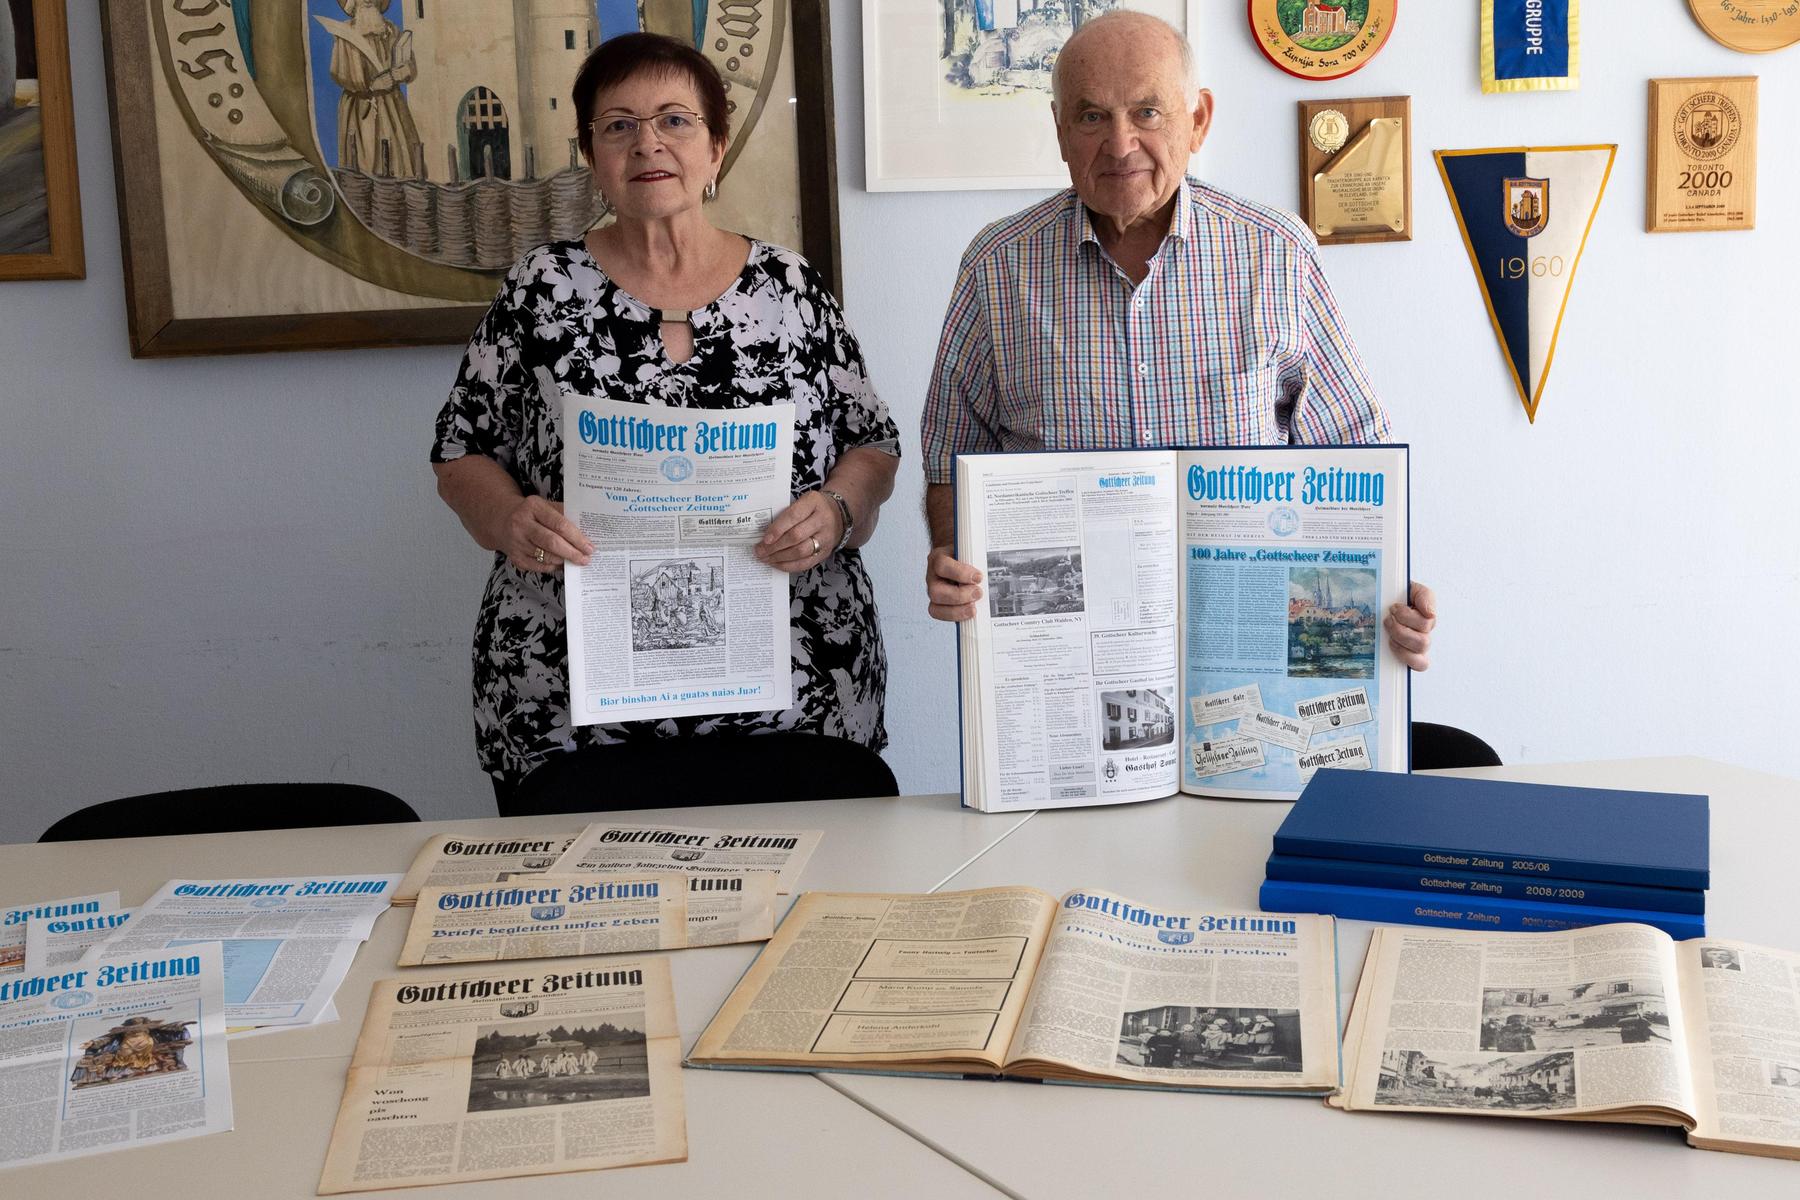 Gottscheer in Kärnten: Ihre Zeitung verbindet Menschen in elf Ländern der Welt